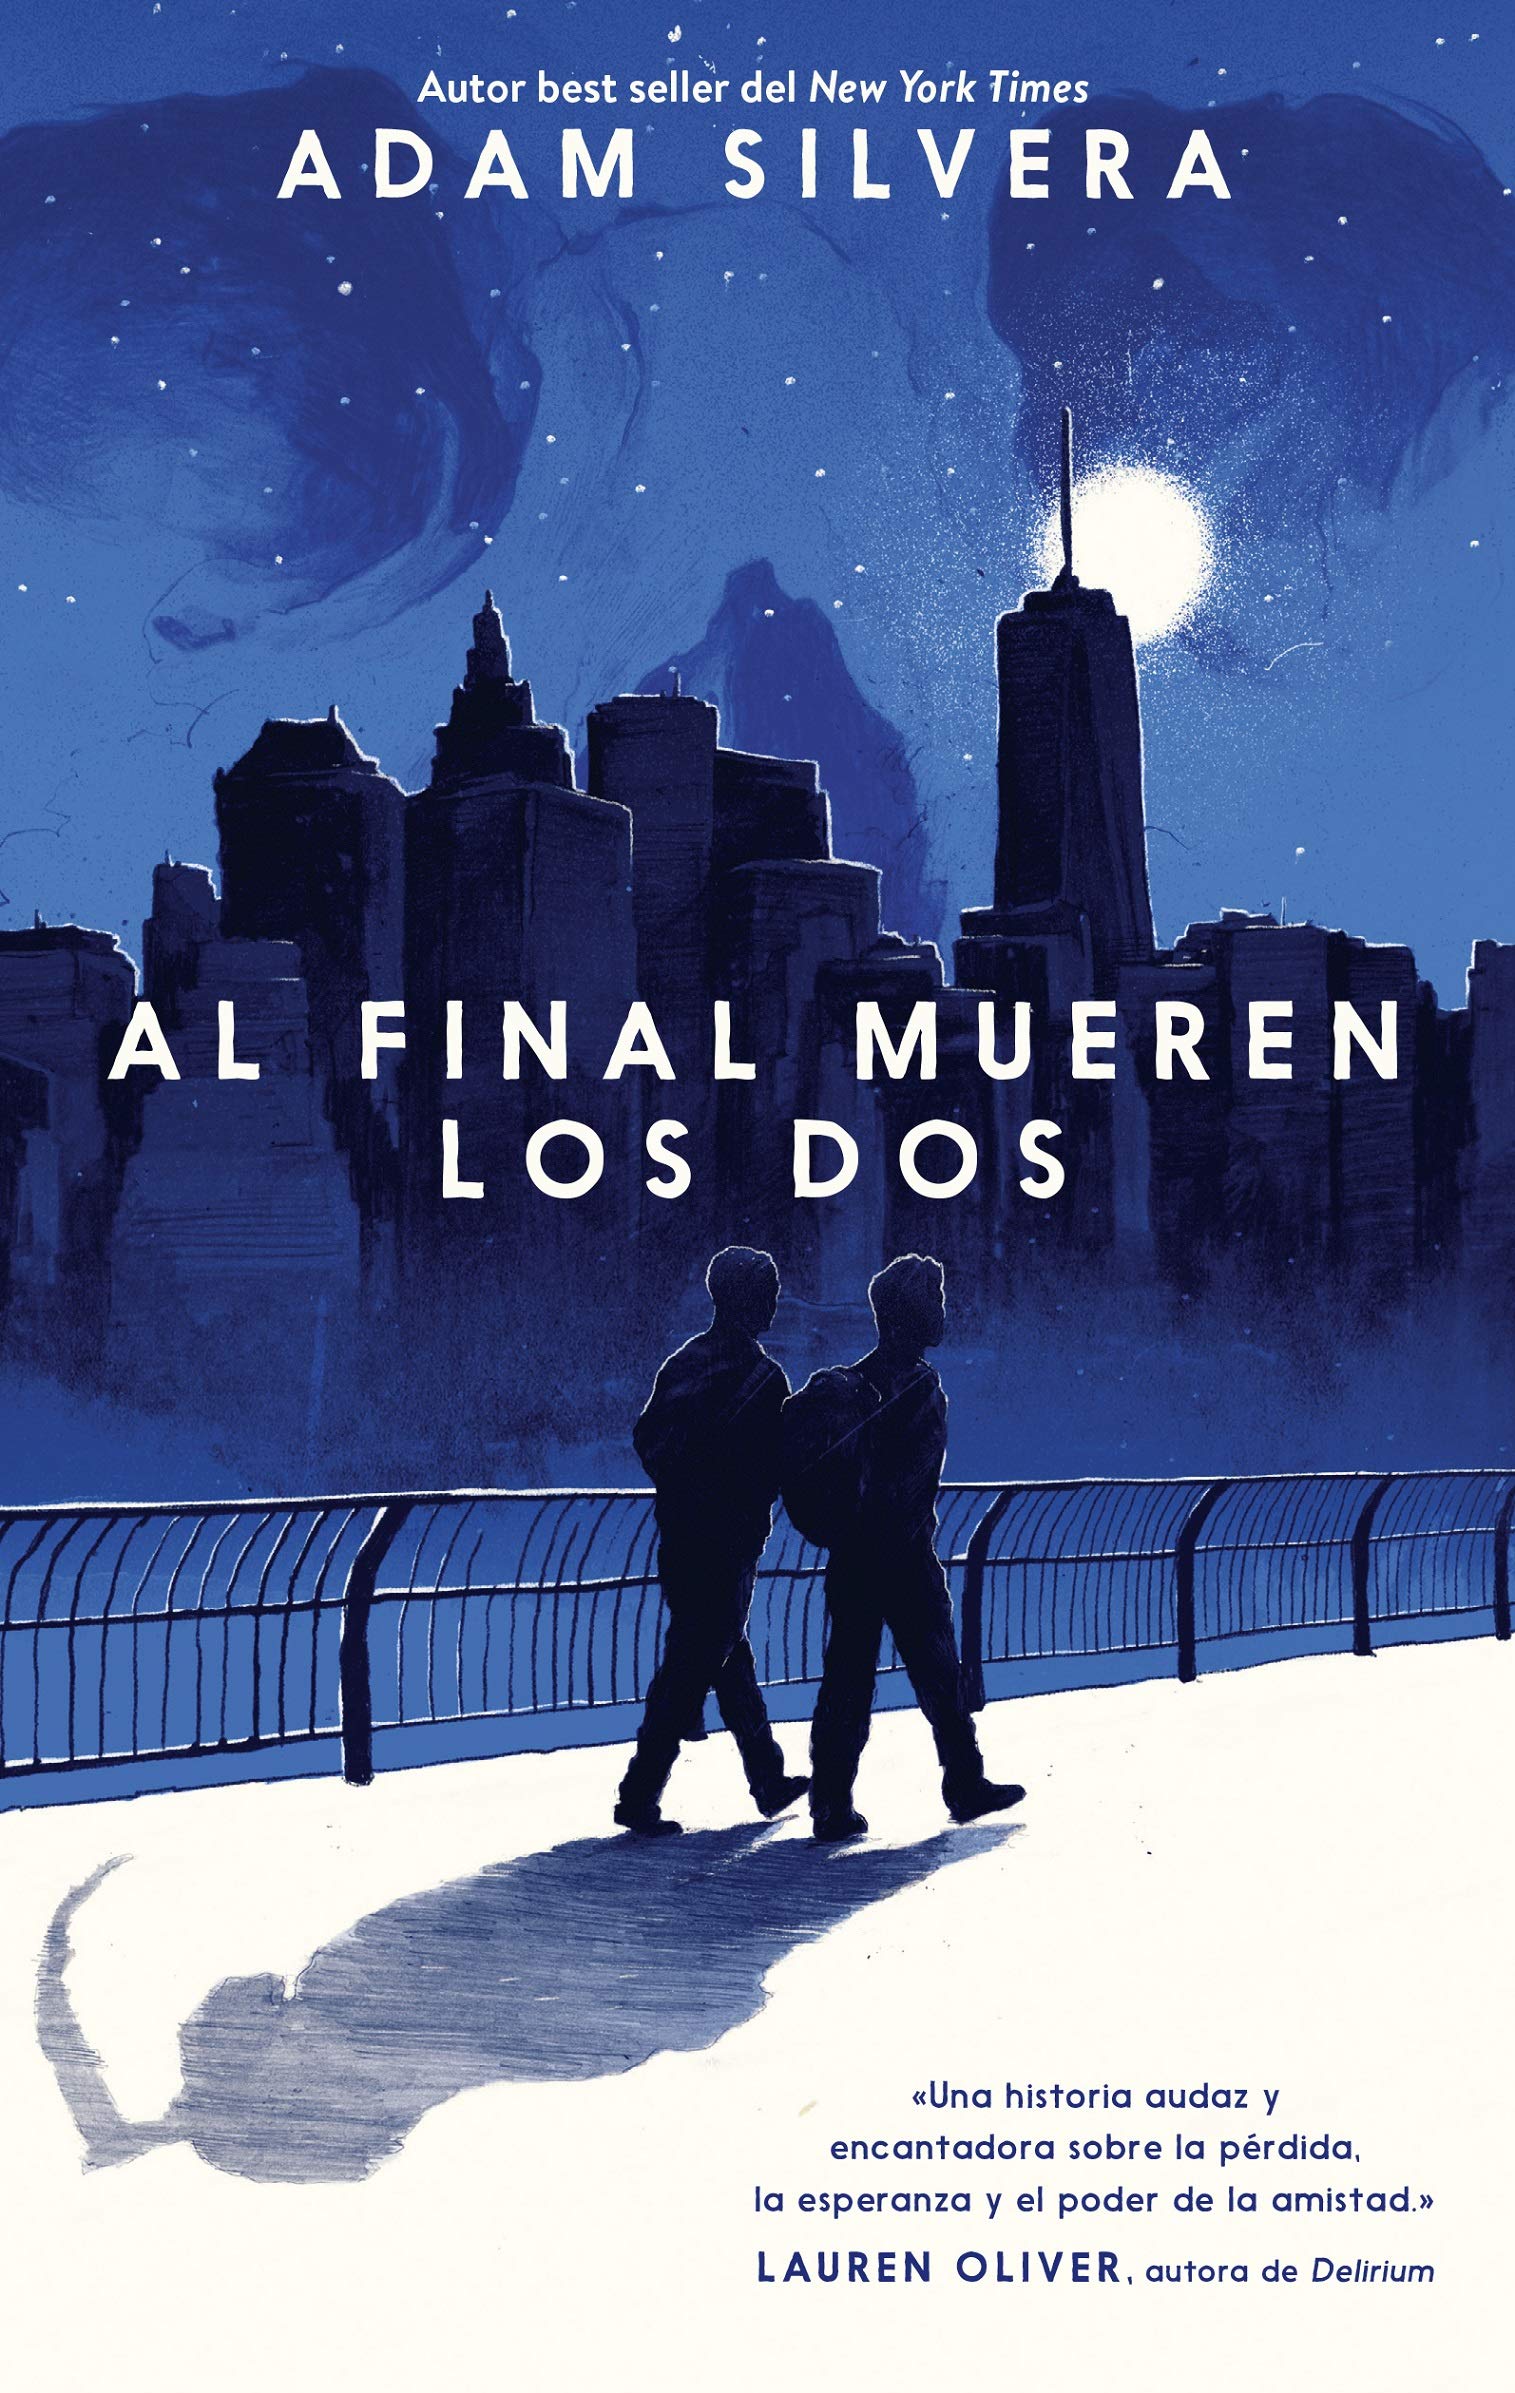 Al final mueren los dos | Guillermo del Toro, Antonio Padilla Esteban image